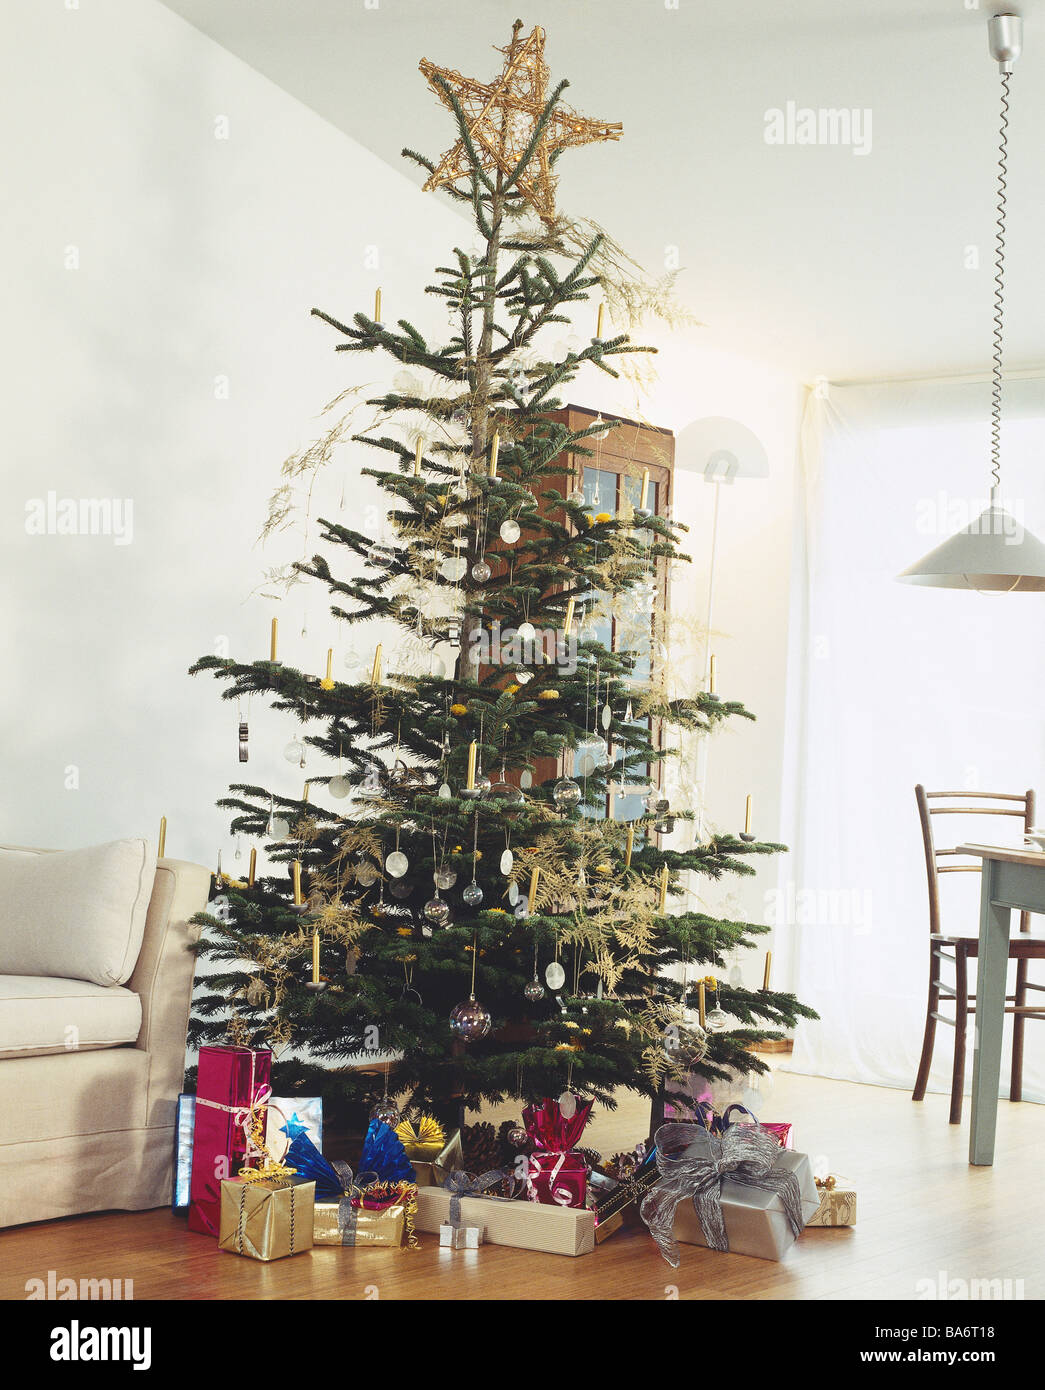 Natale salotti di Natale albero di Natale-doni sacri la sera della vigilia  di Natale abete decorate albero-gioielli Bescherung Foto stock - Alamy